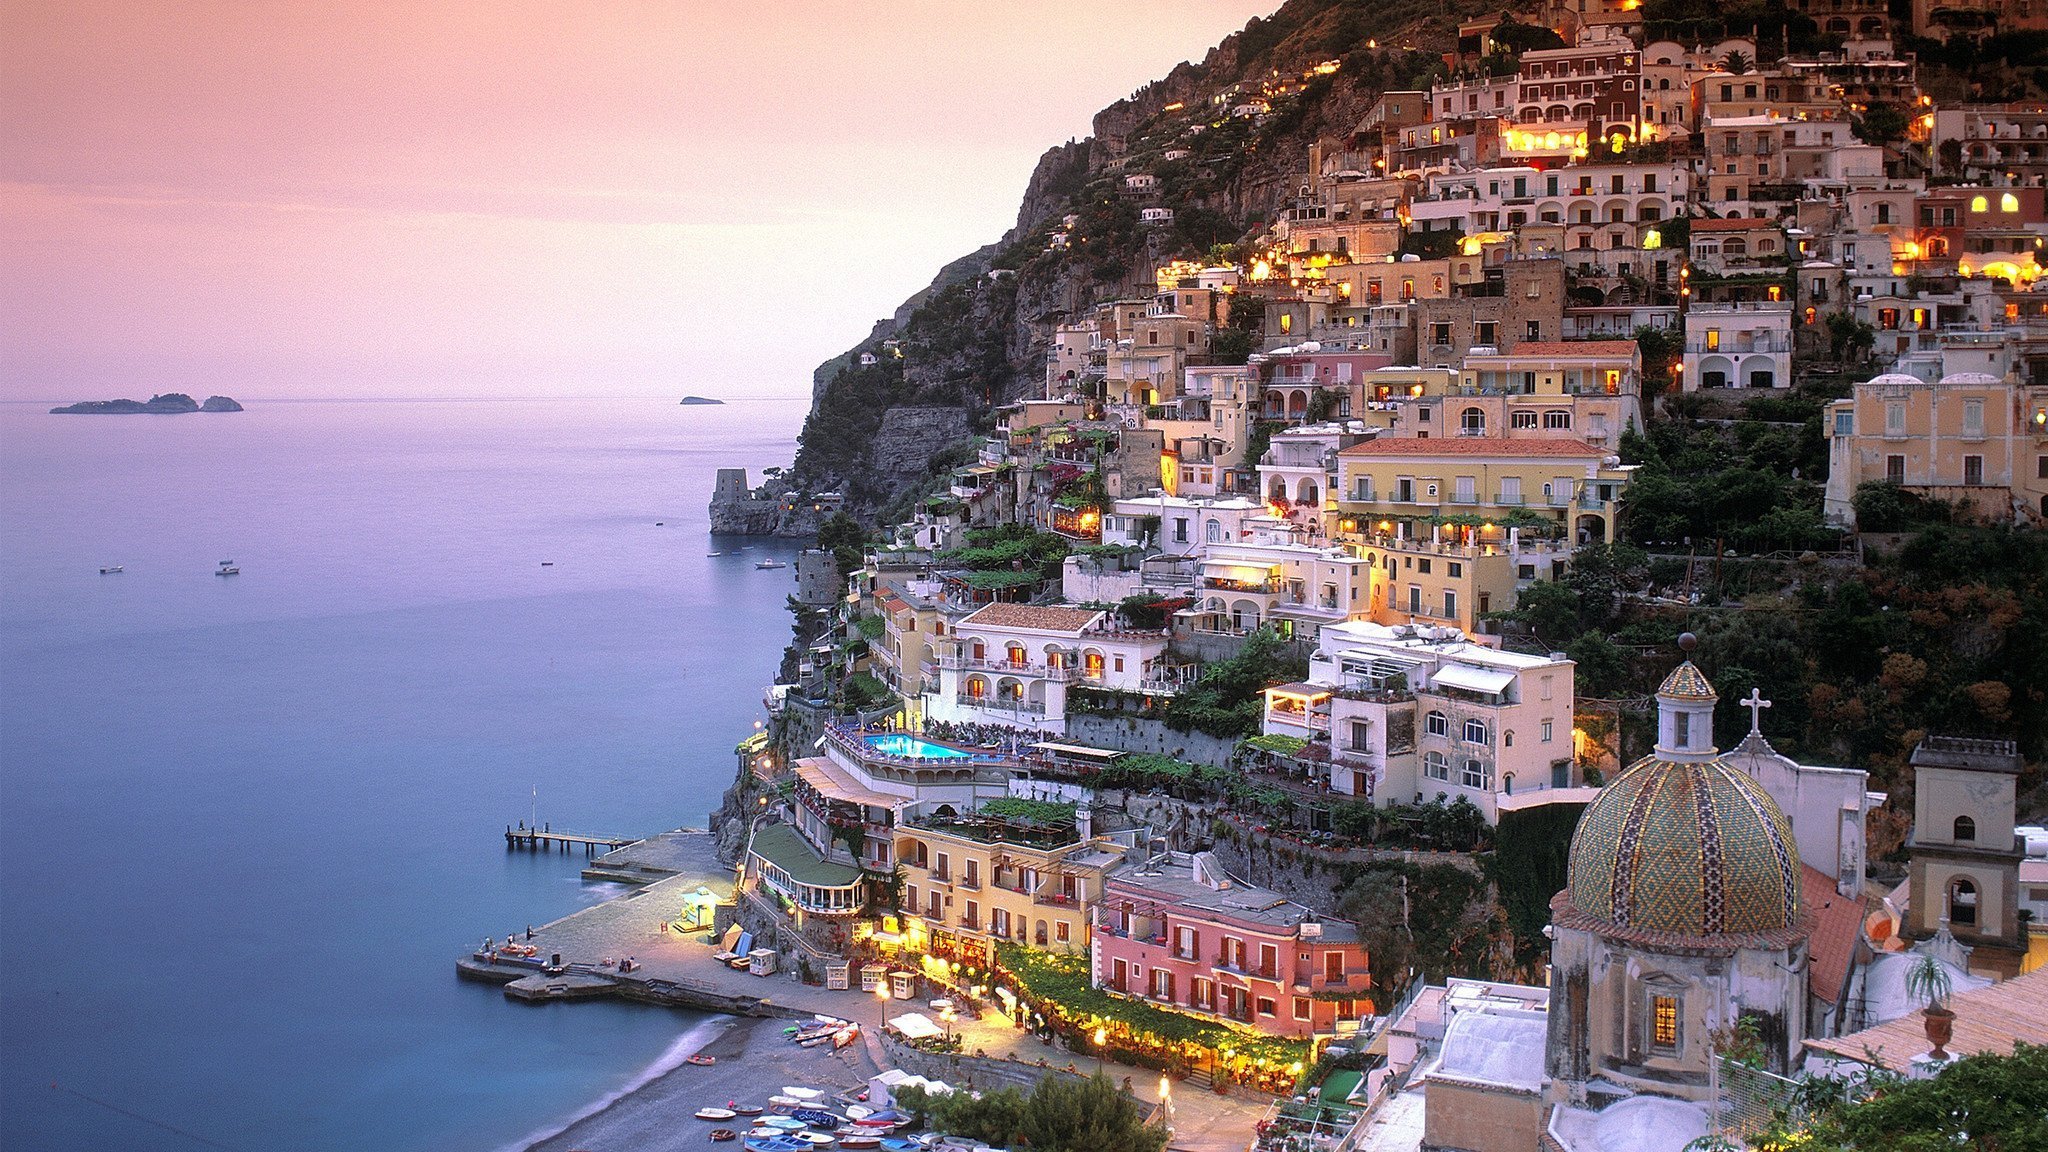 Amalfi coast. Амальфийское побережье (Amalfi Coast), Италия. Амальфи Позитано Италия. Побережье Позитано Италия. Италия Амальфитанское побережье Позитано.